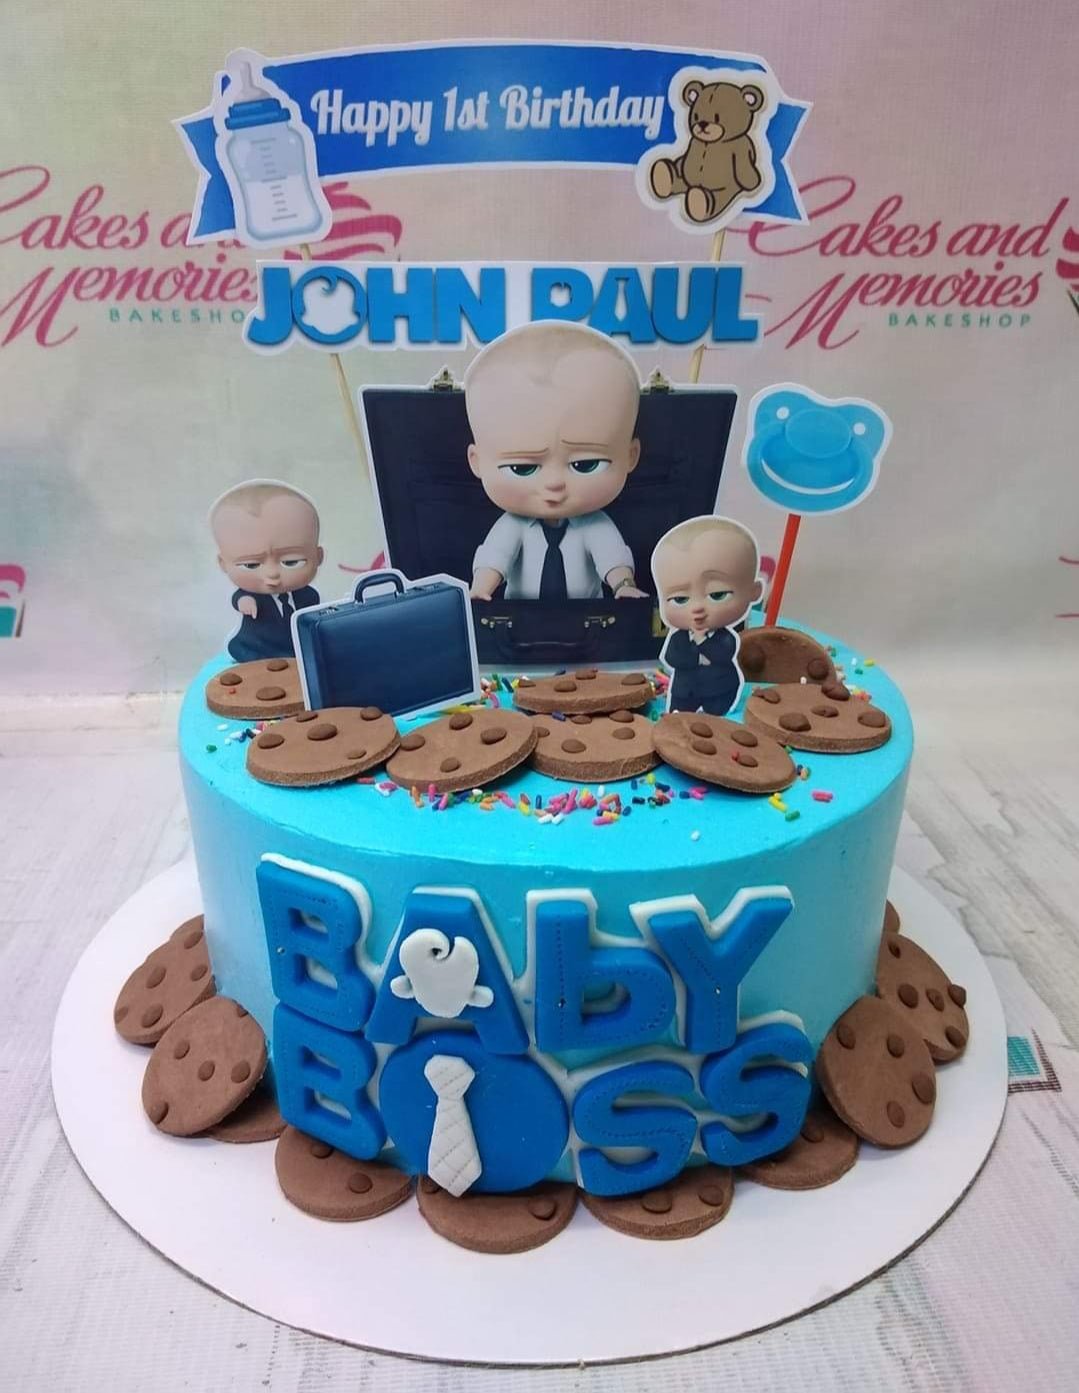 Baby is the Boss Cake SG / Little Men cake / Little gentlemen cake SG -  River Ash Bakery